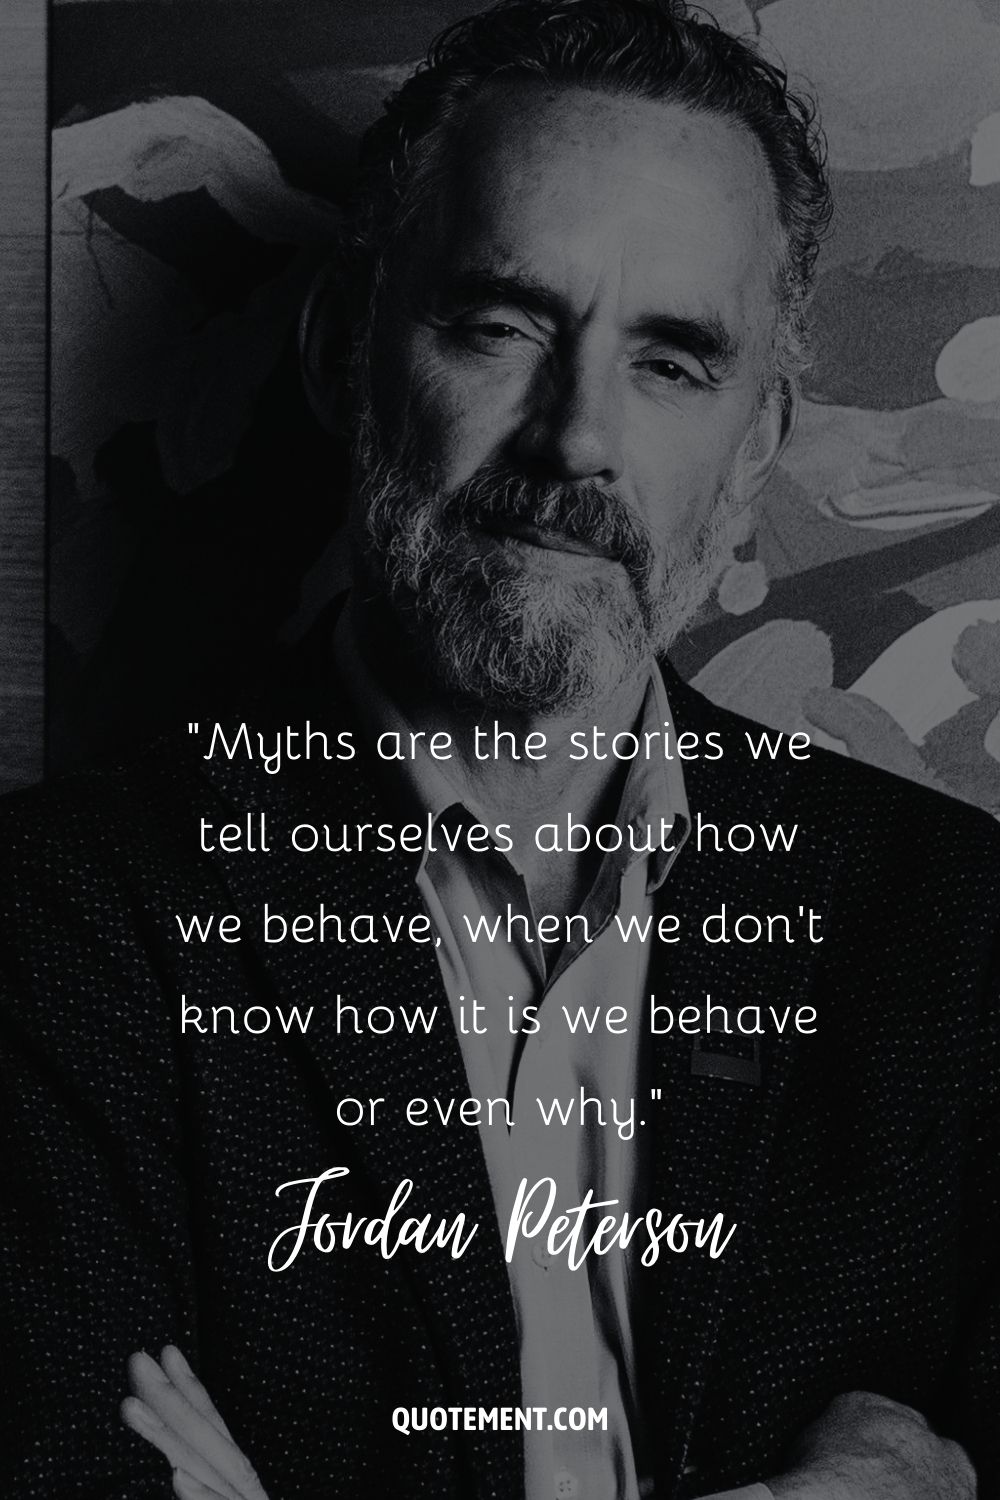 Los mitos son las historias que nos contamos sobre cómo nos comportamos, cuando no sabemos cómo nos comportamos ni por qué.